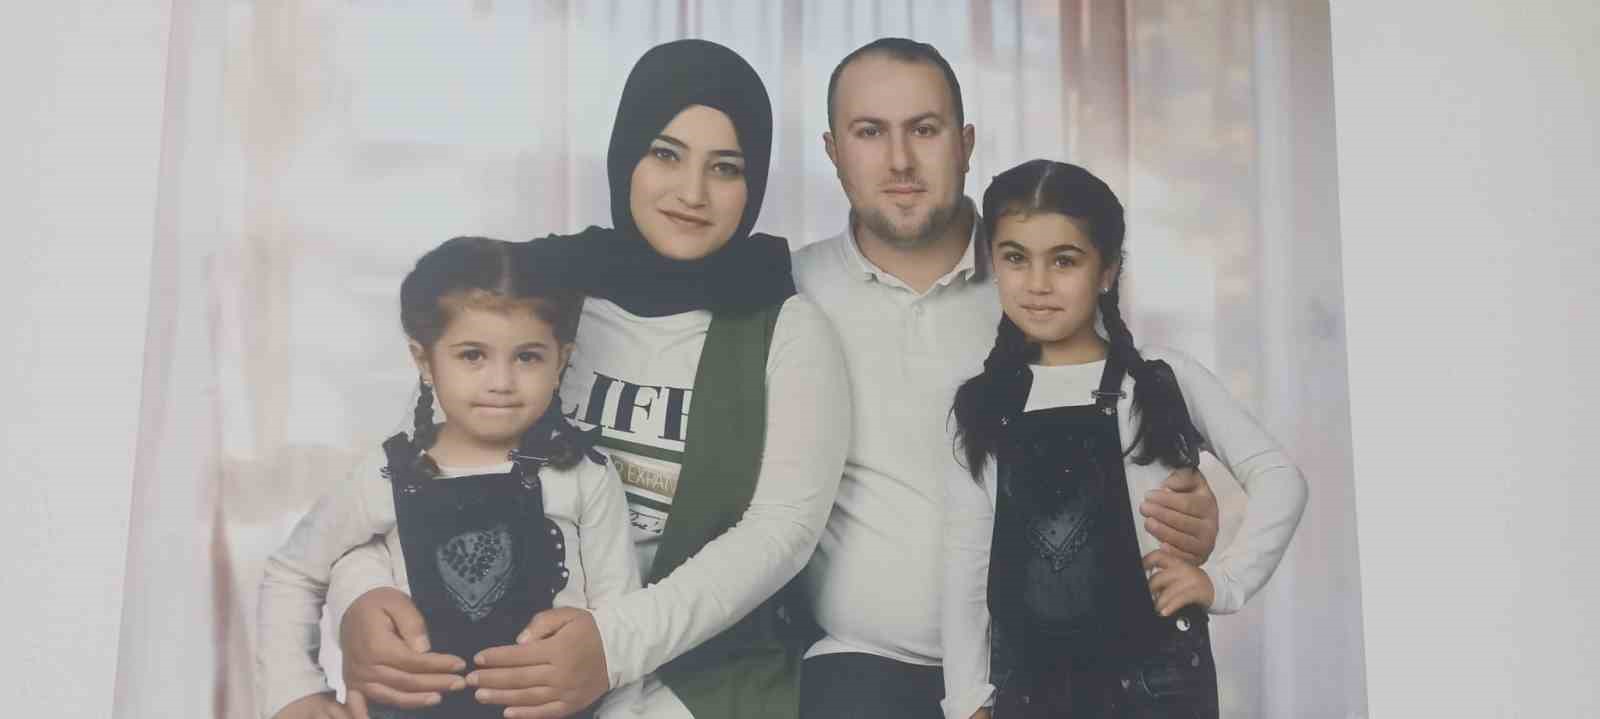 İzmir’de baba dehşeti: 1 kızını öldürdü, diğerini yaraladı
